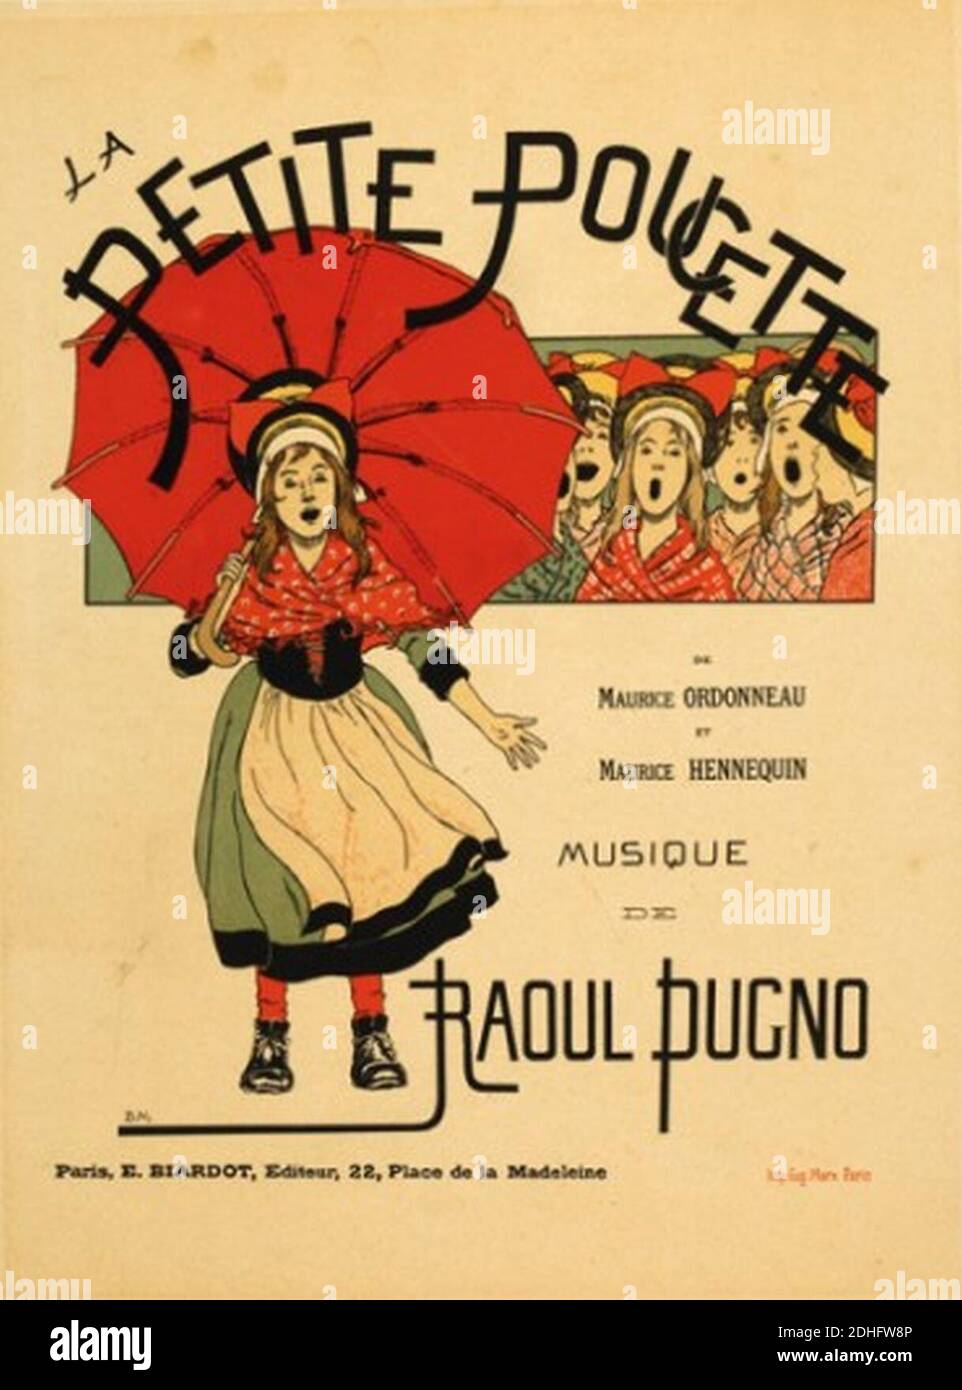 La Petite Poucette poster by de Monvel. Stock Photo